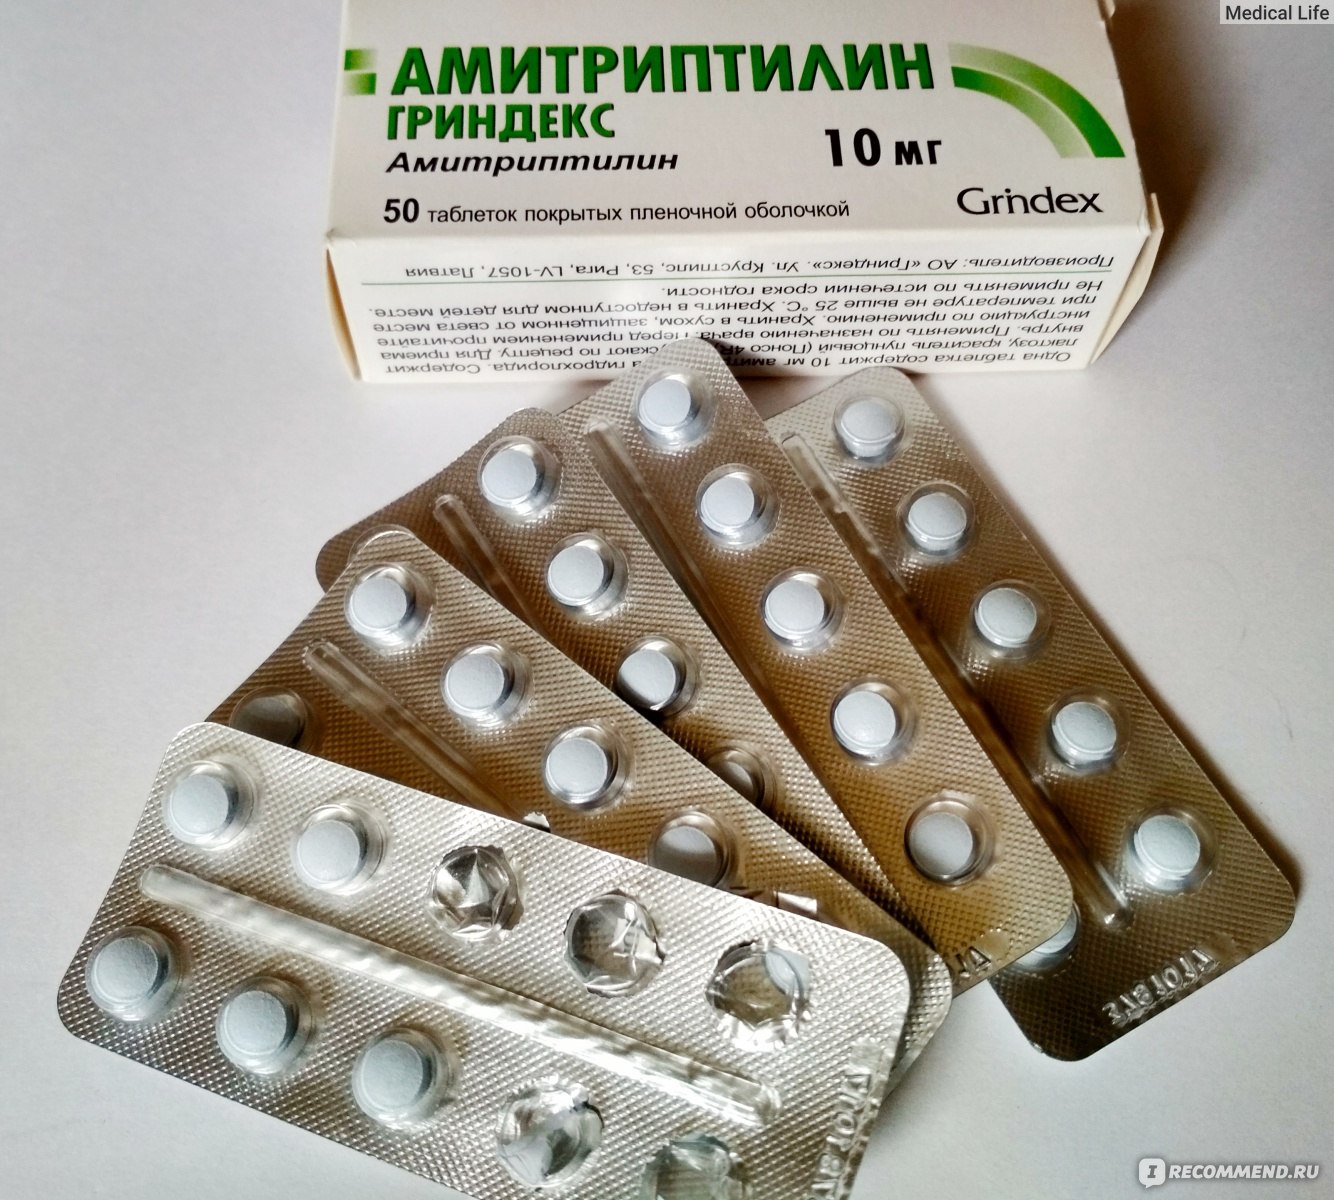 Антидепрессанты отзывы пациентов принимавших. Амитриптилин Гриндекс 25мг нарх. Амитриптилин 10 мг Гриндекс. Антидепрессант Grindex "Амитриптилин".